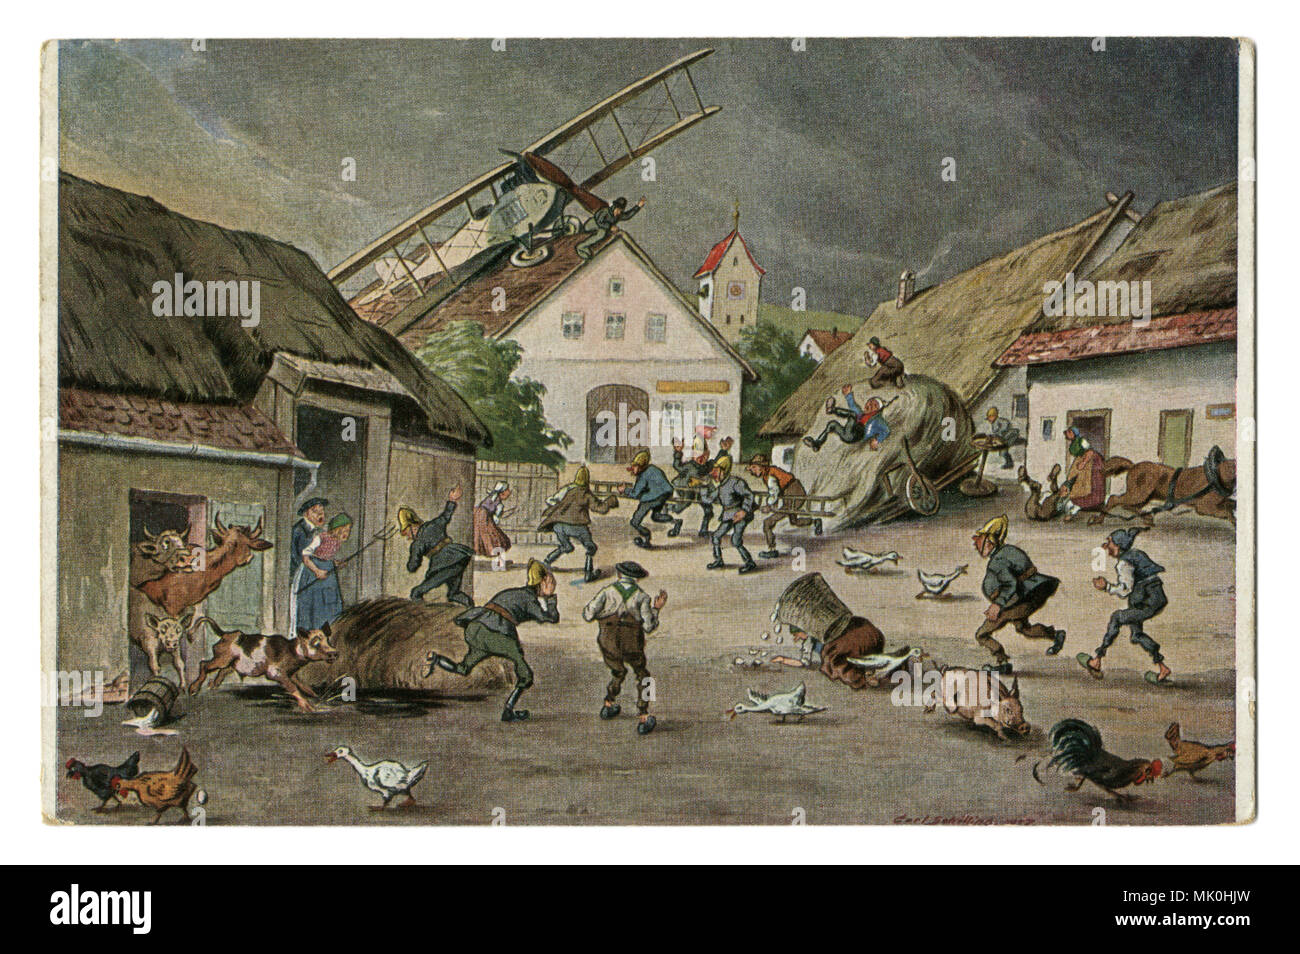 Eine alte humorvolle Deutsche Postkarte: ein Doppeldecker Flugzeug in das Dorf auf dem Dach eines Hauses landete, Panik der Dorfbewohner und Haustiere. Der Beginn der Luftfahrt. Stockfoto